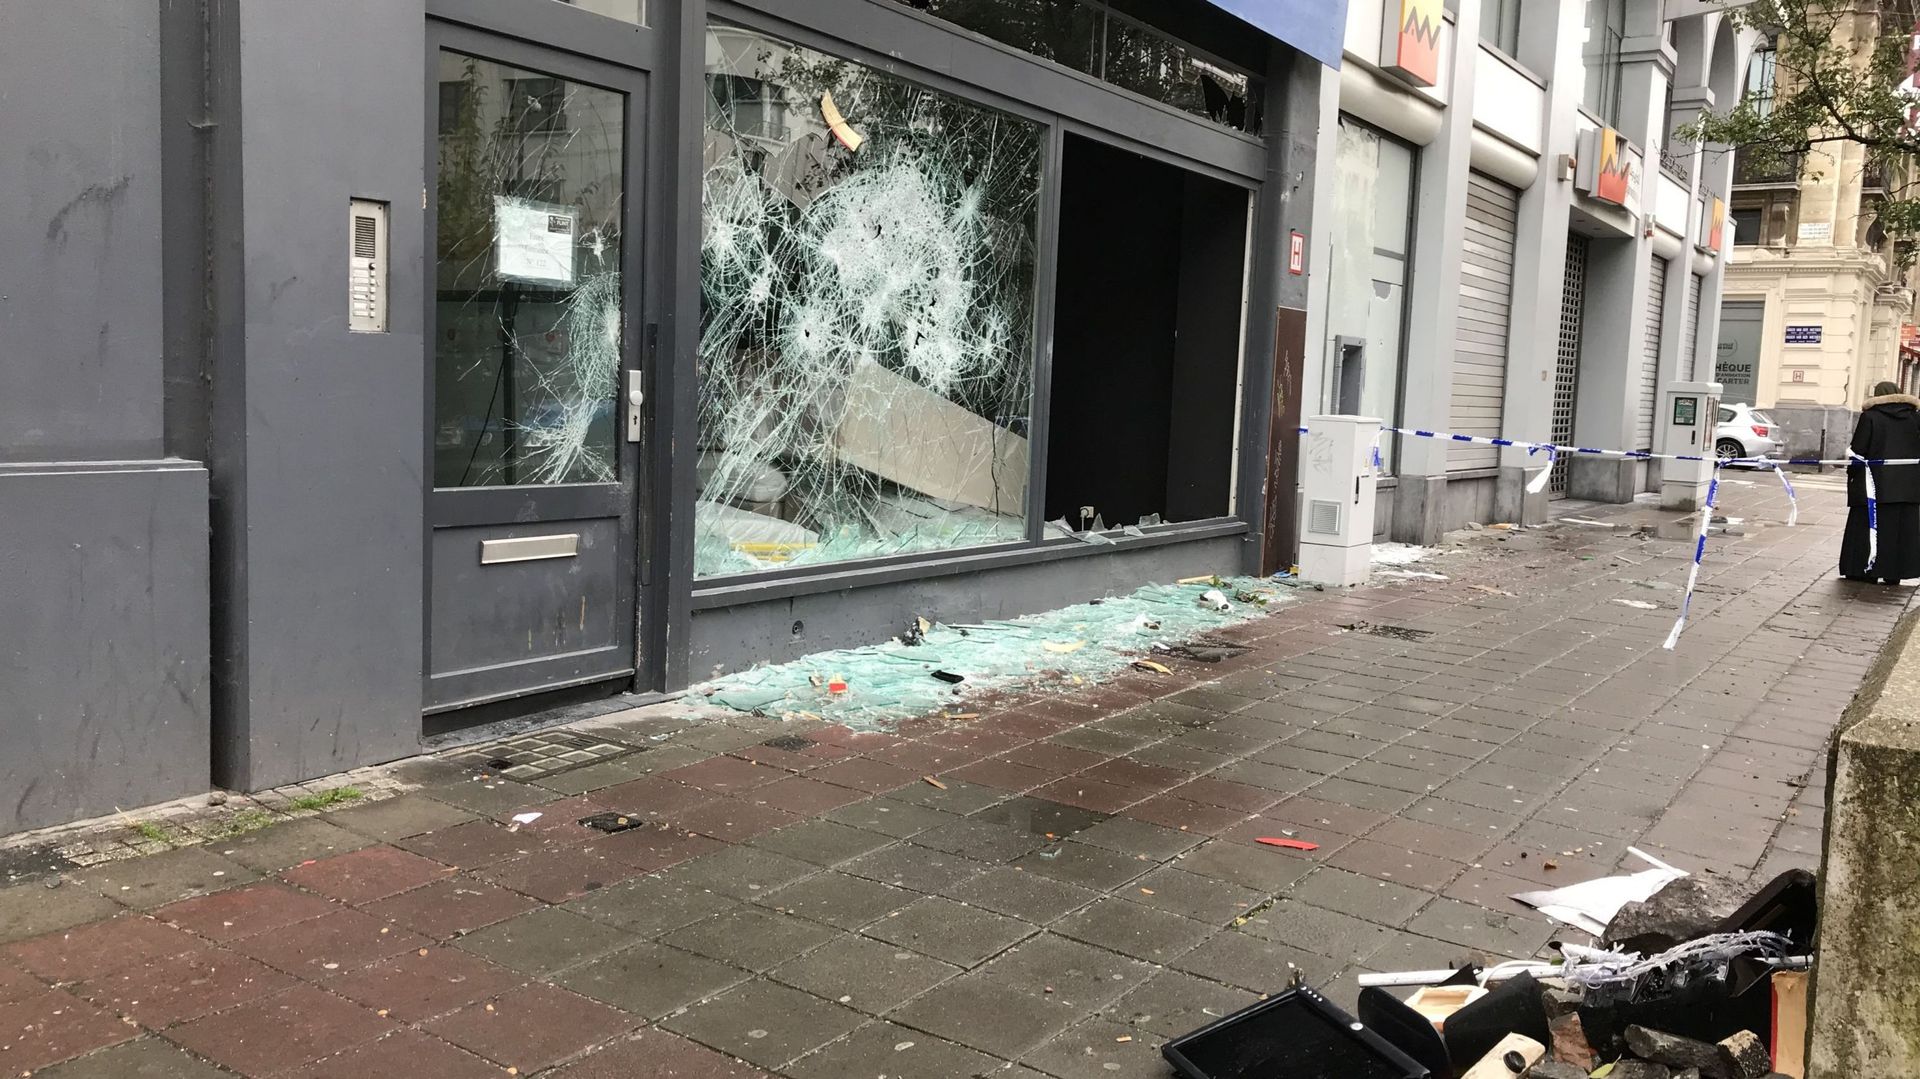 22 policiers blessés suite aux échauffourées dans le centre de Bruxelles samedi soir